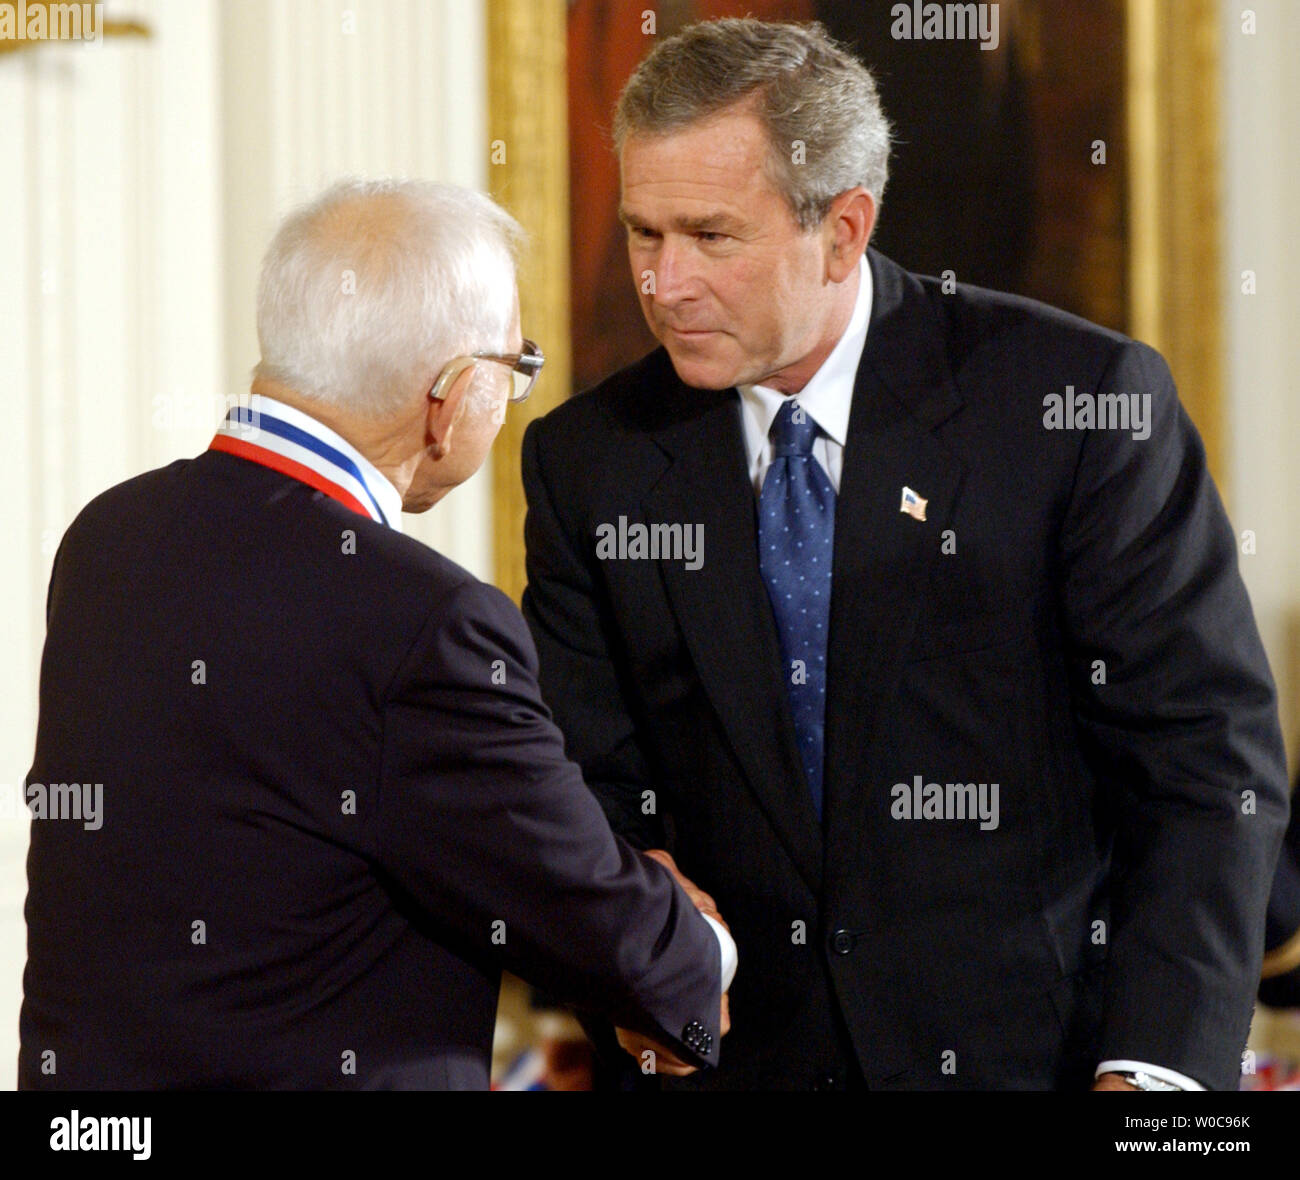 Präsident George W. Bush schüttelt Hände mit Leo L. Beranek, 2002 National Medal of Science Nobelpreisträger für Engineering, während einer Zeremonie im East Room des Weißen Hauses an November 6, 2003. Baranek ist von BBN Tehcnologies in Cambridge, Massachusetts (UPI/Roger L. Wollenberg) Stockfoto